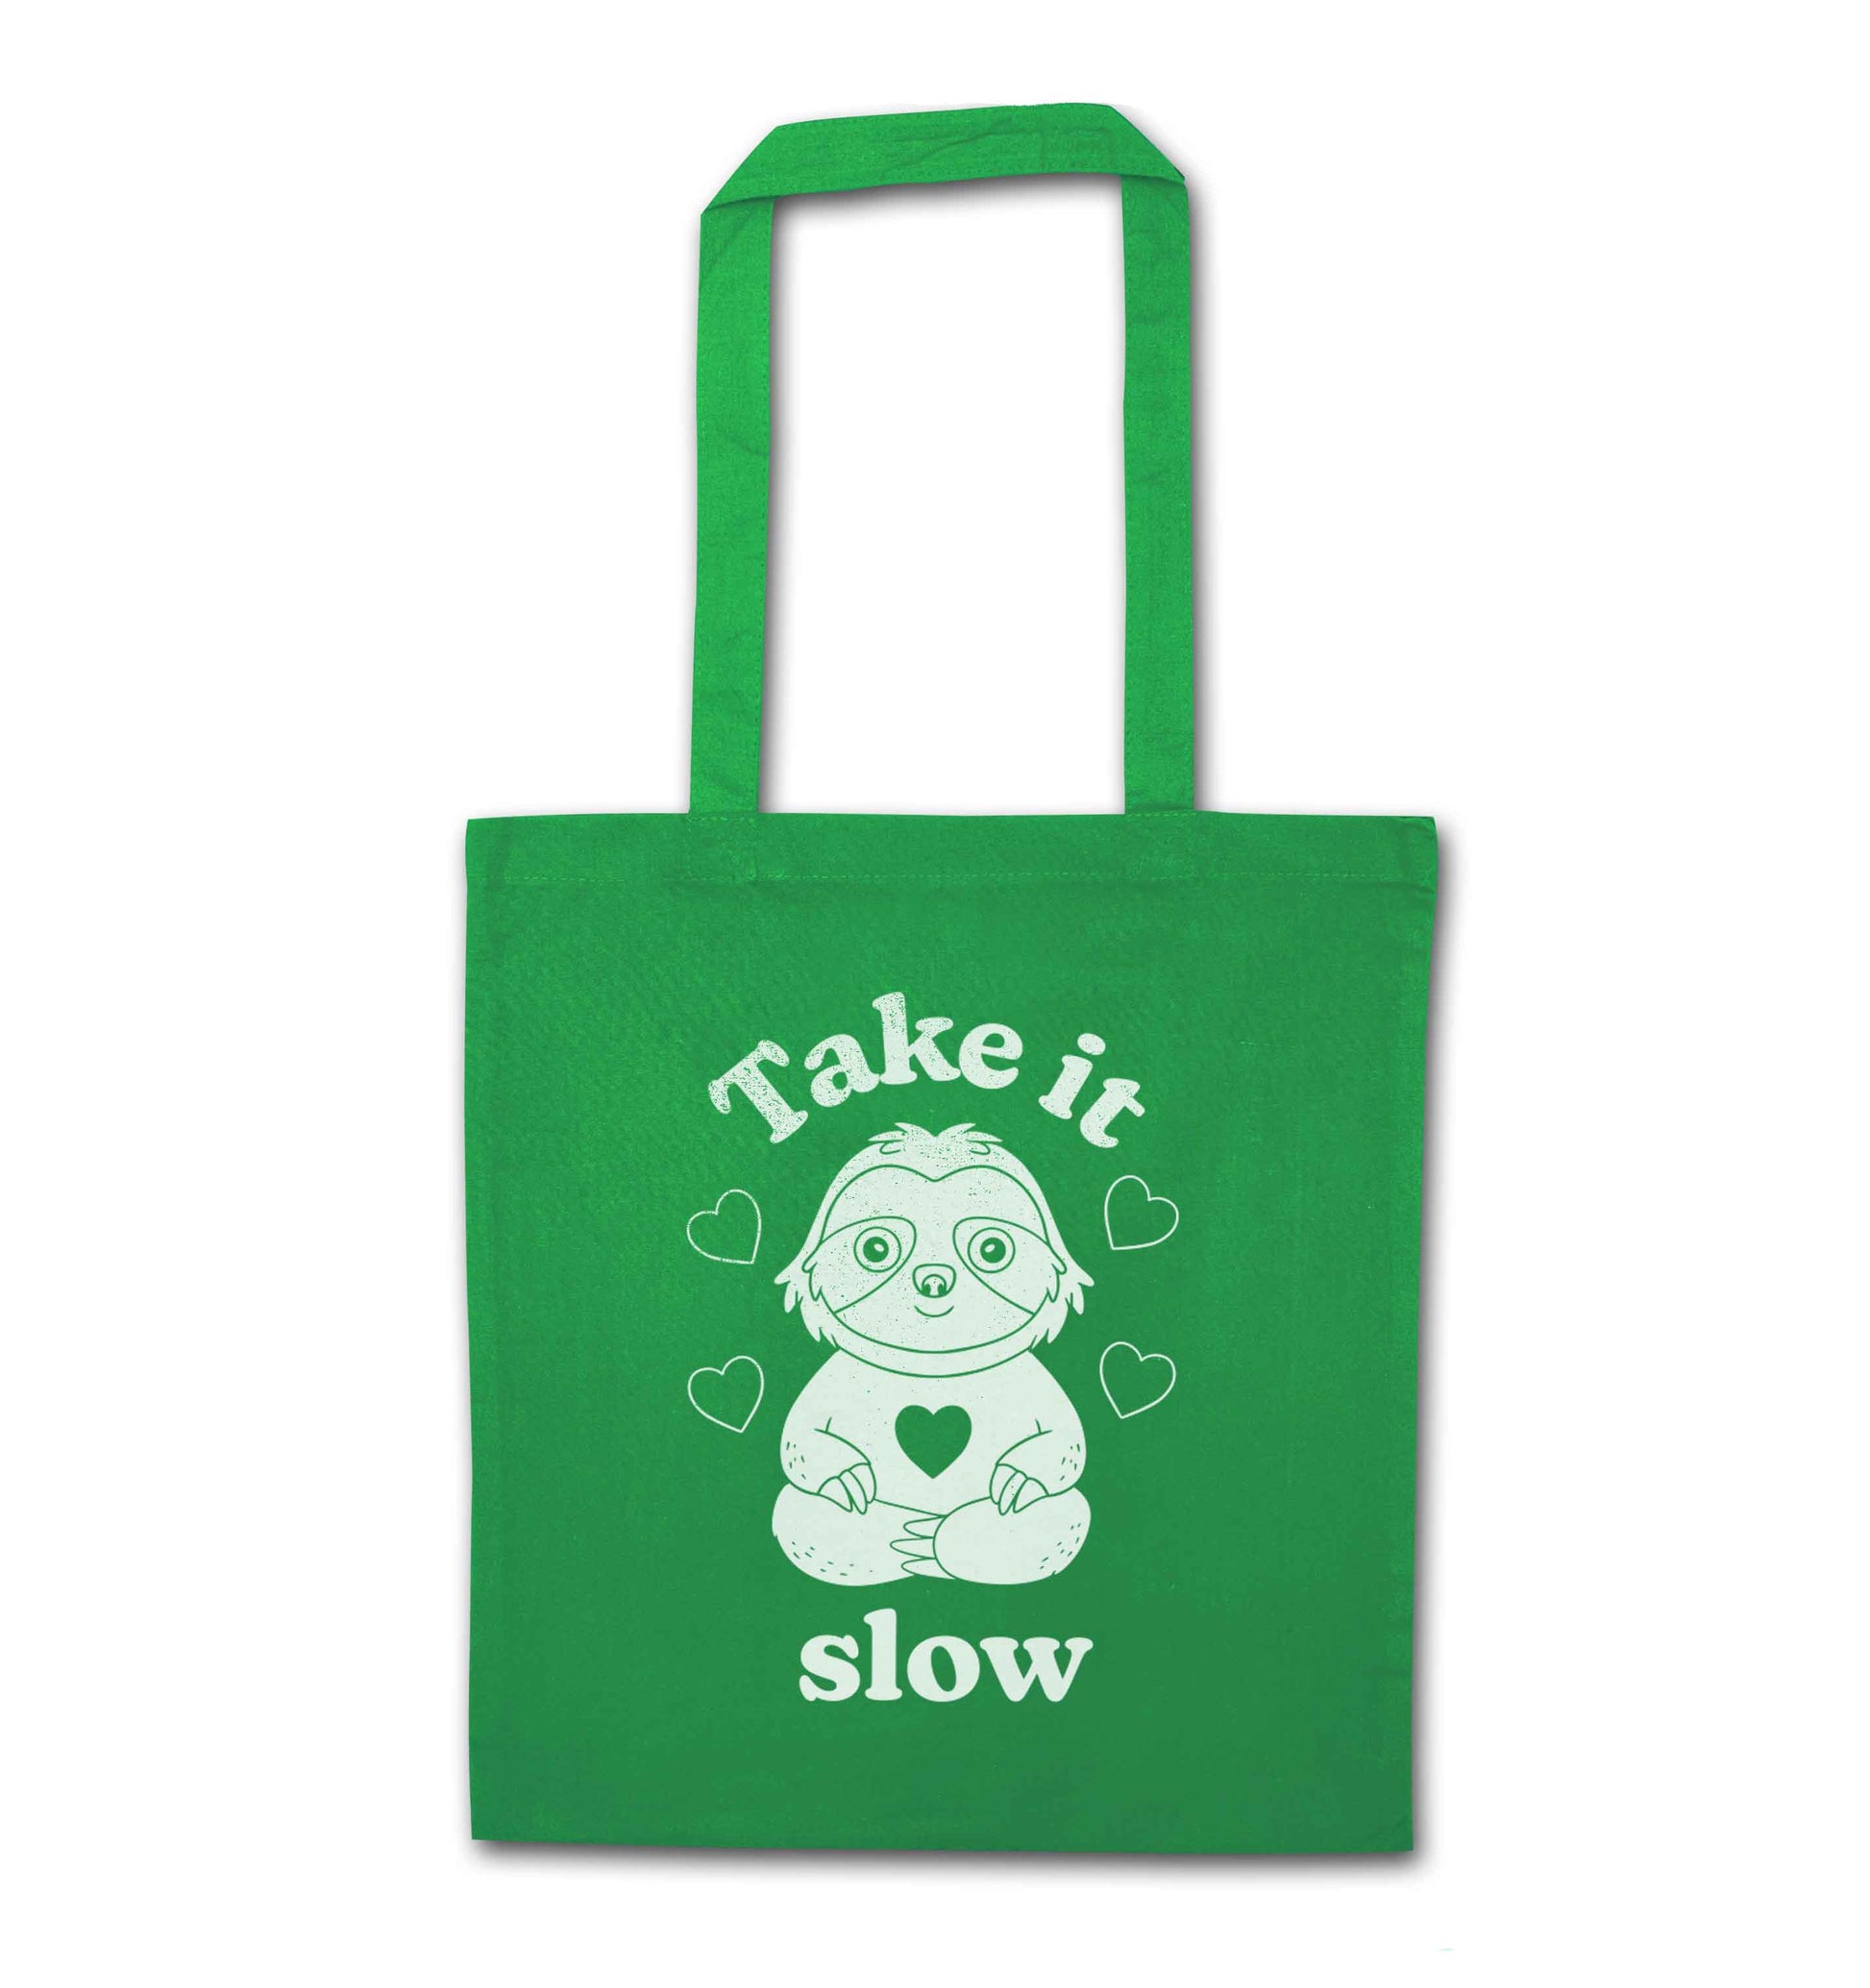 Take it slow green tote bag